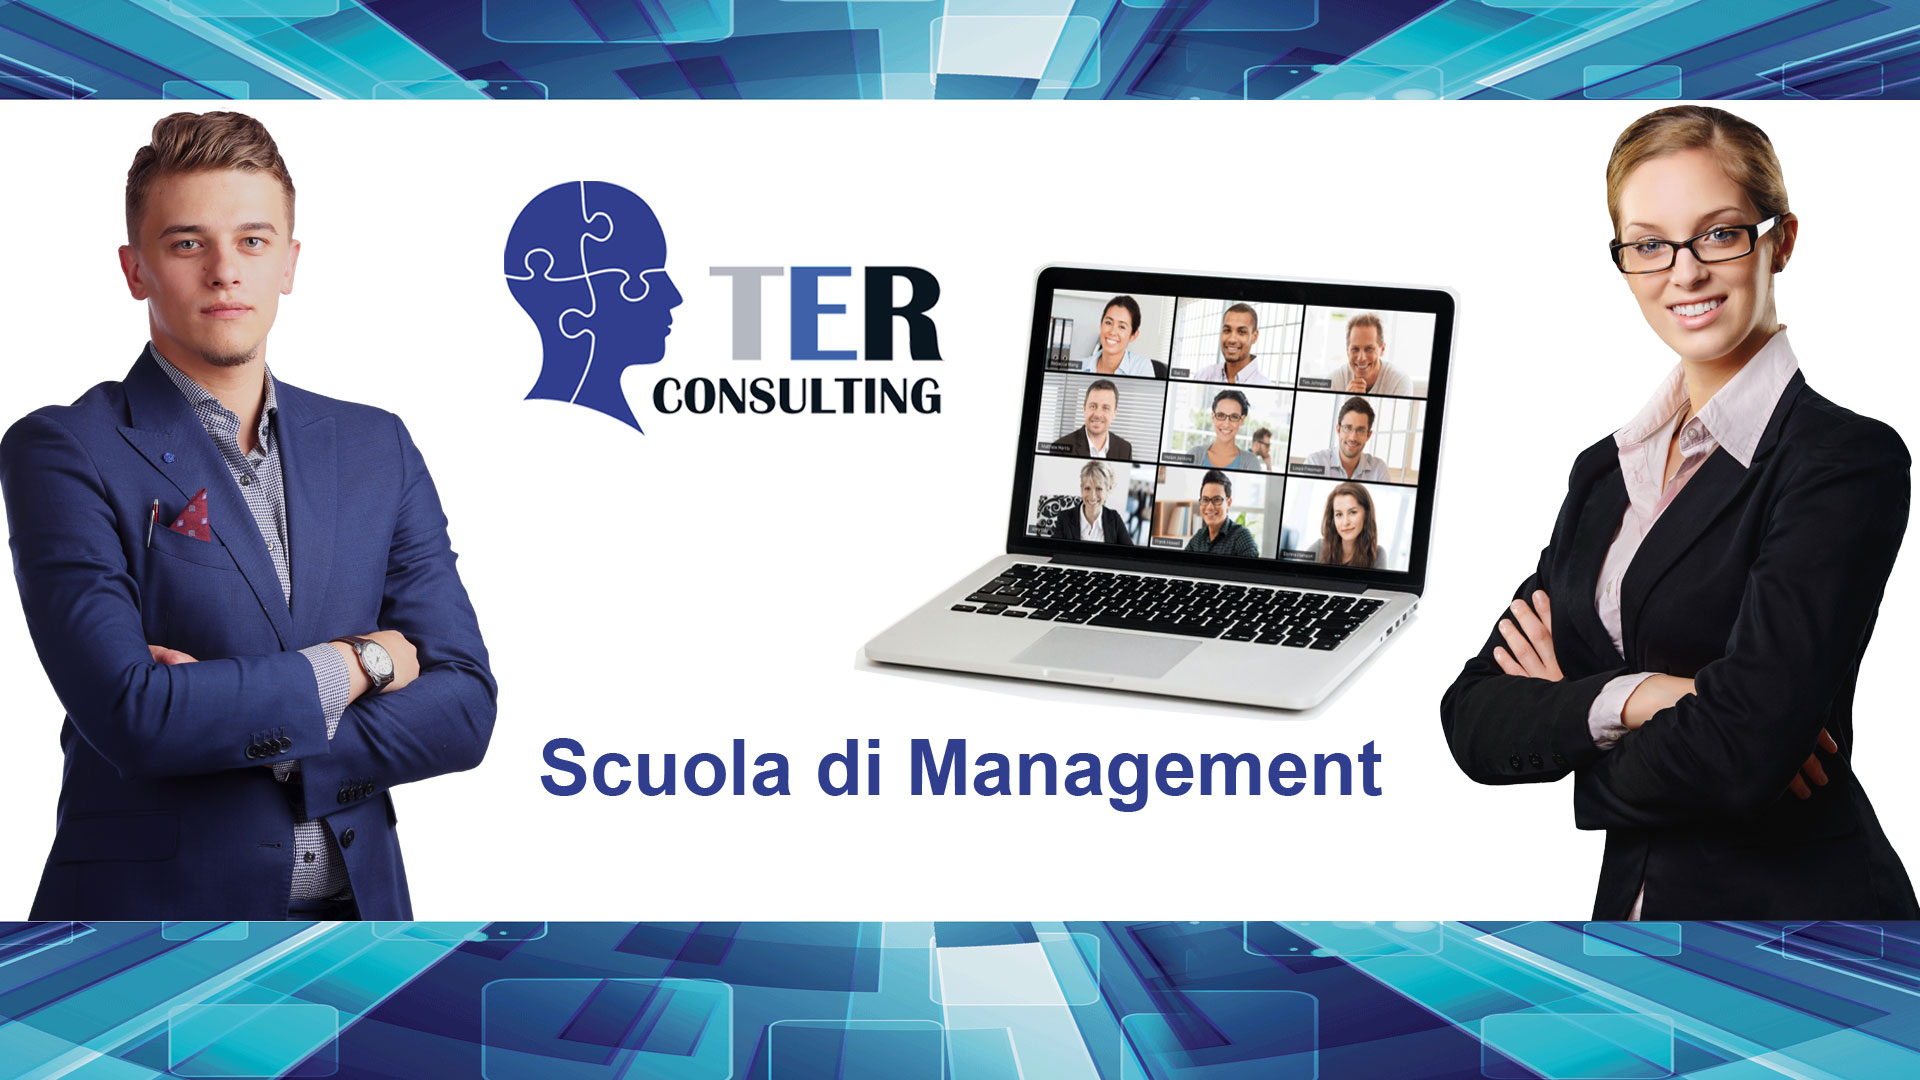 TER Consulting - Scuola di Management - Formazione Manageriale e Consulenza Aziendale